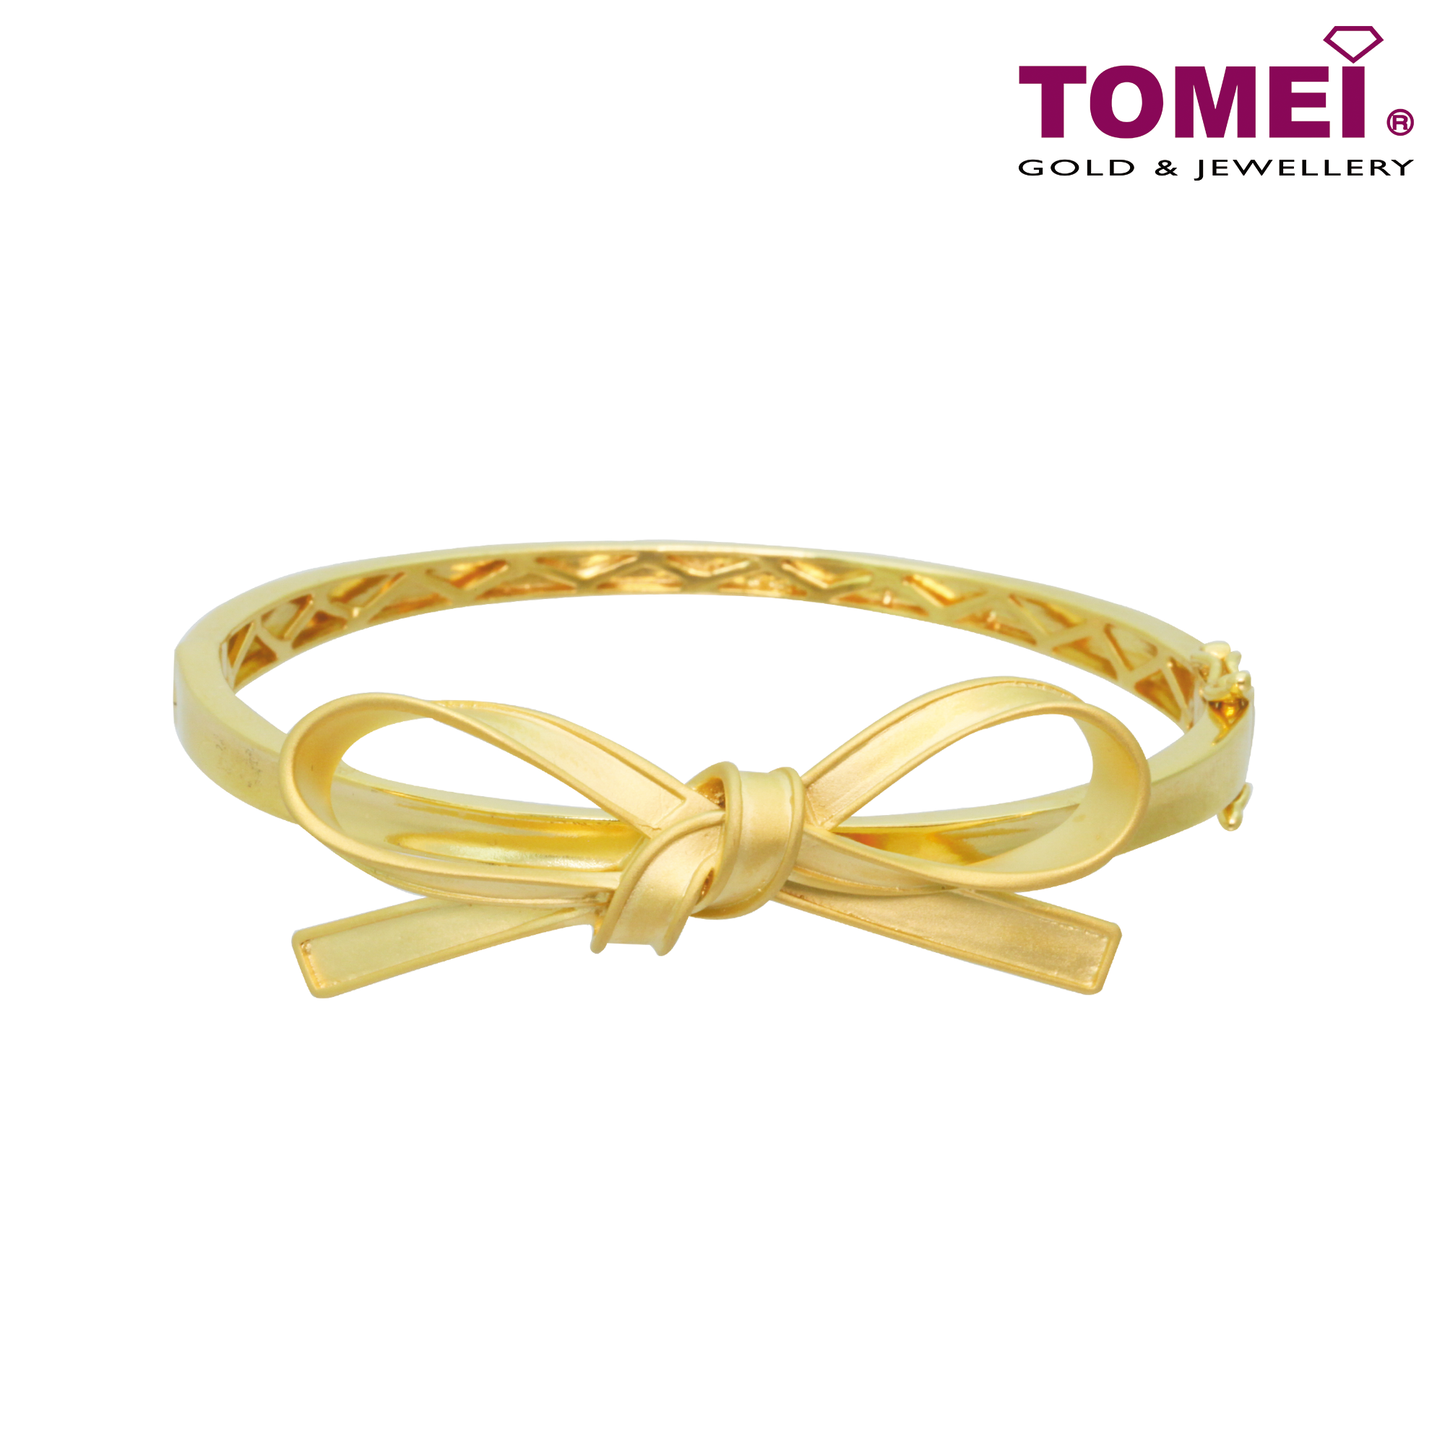 TOMEI Ribbon Bliss Bangle, Yellow Gold 916